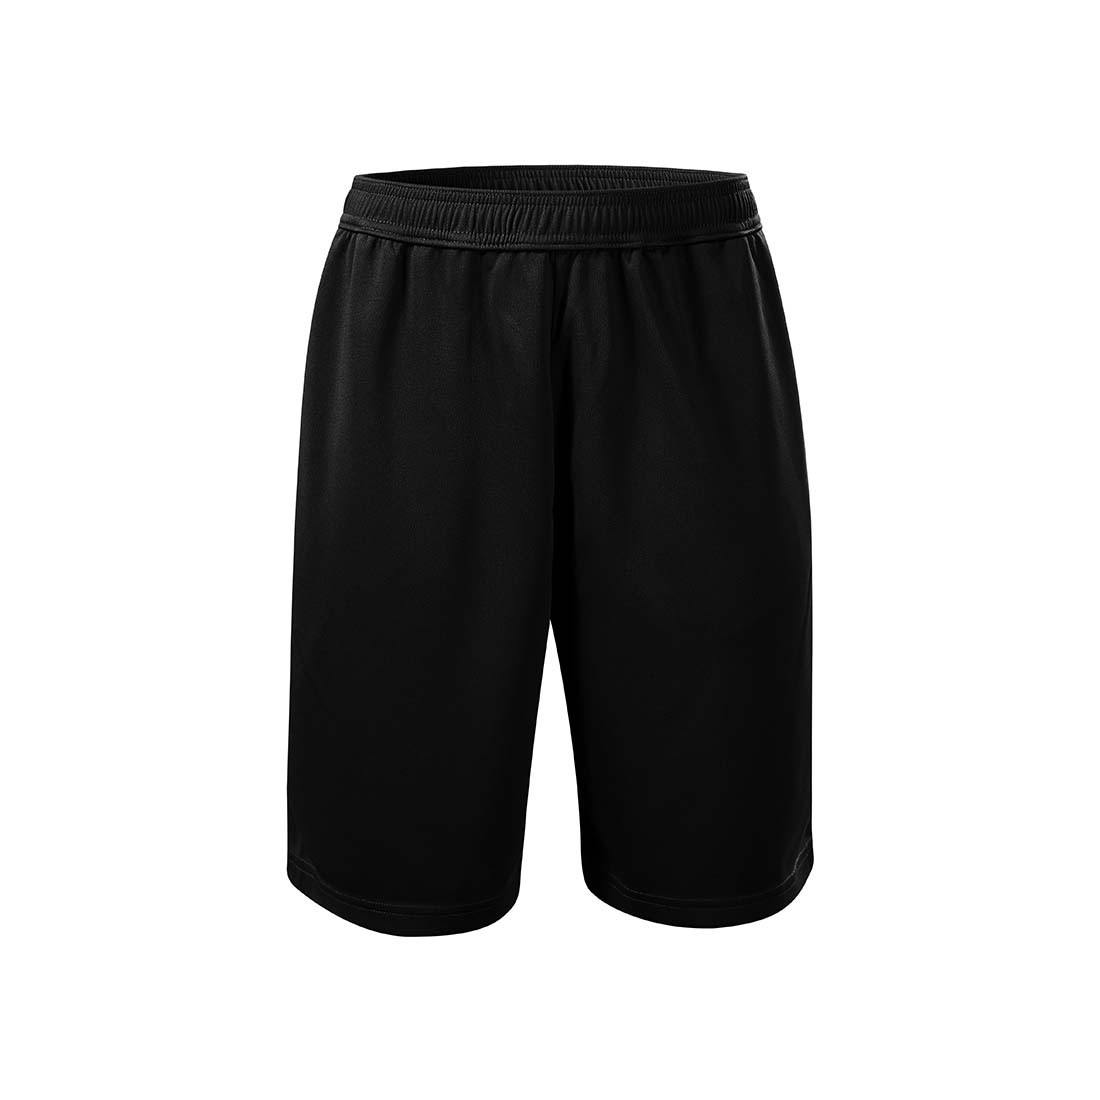 Pantalones cortos para hombres - Ropa de protección